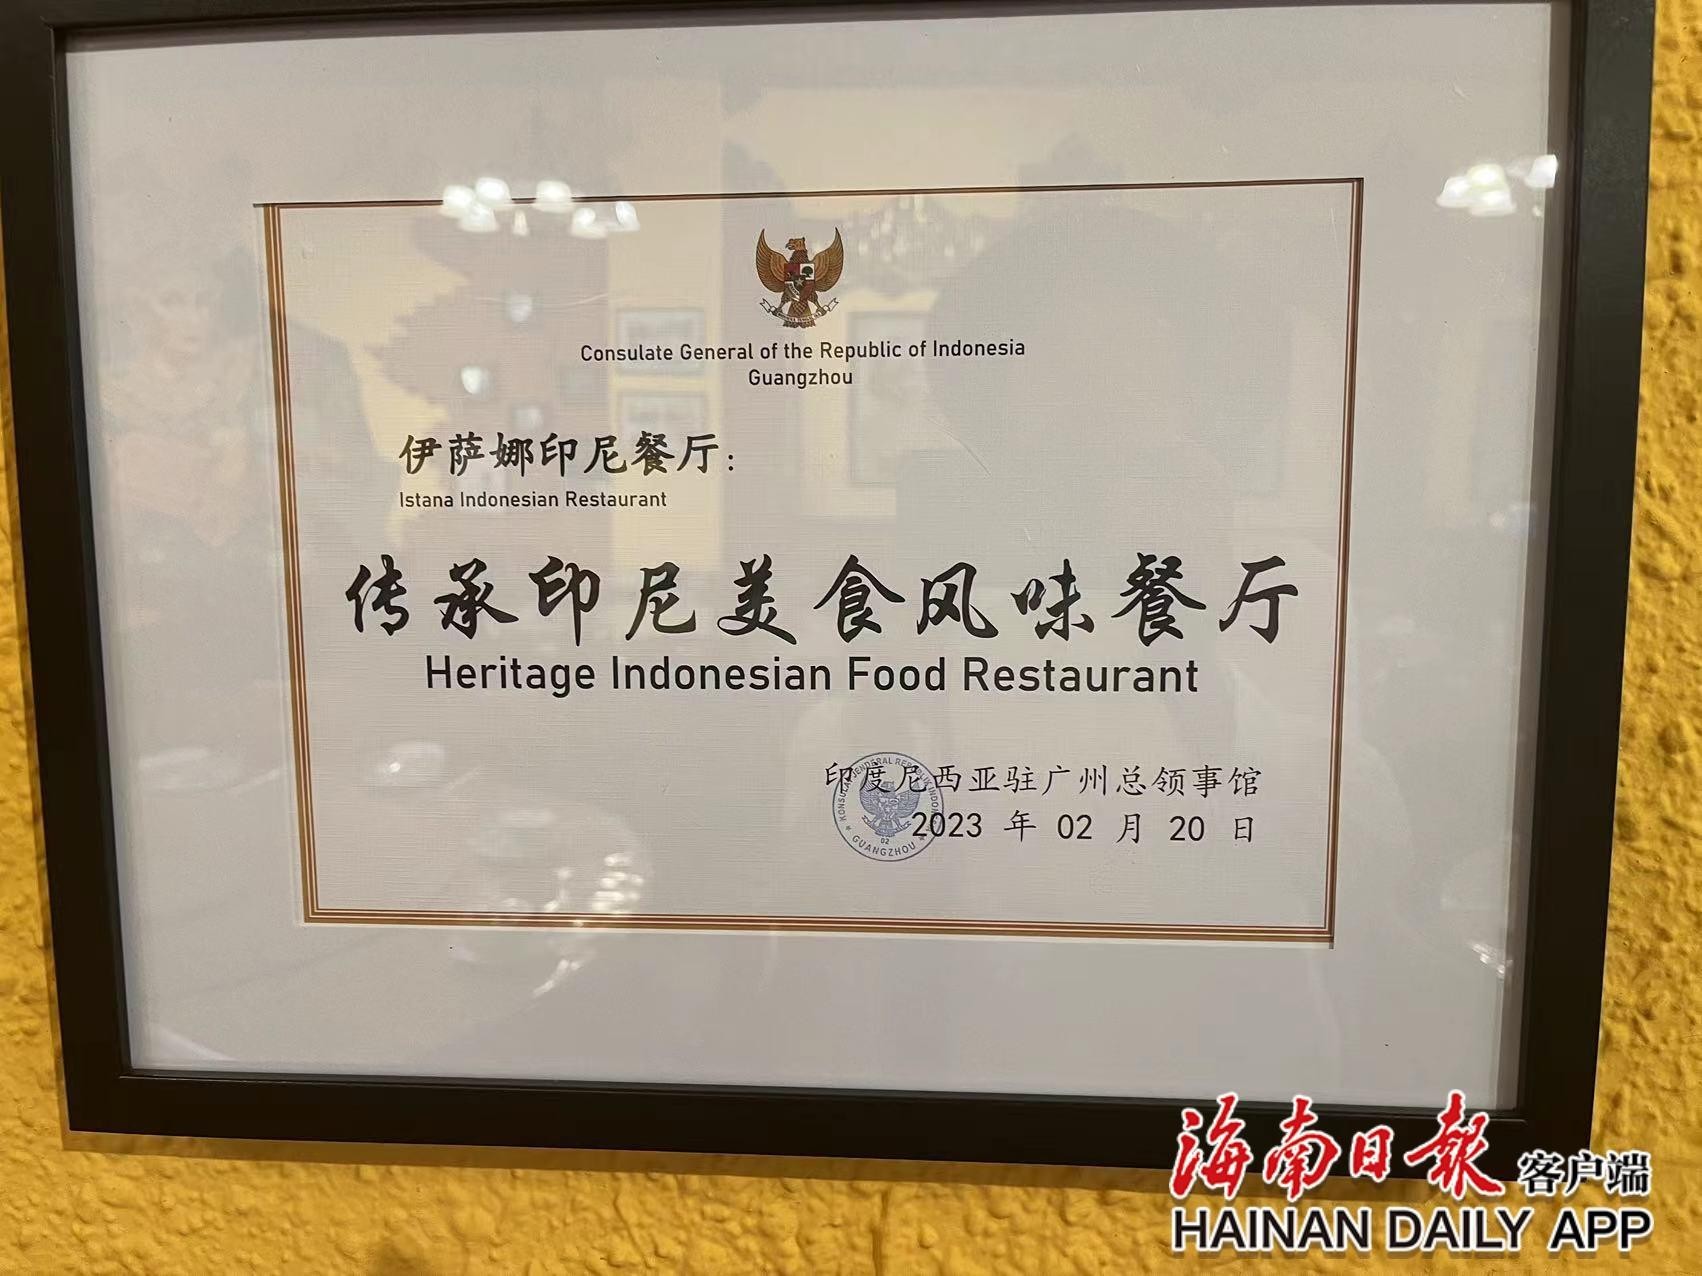 Konsulat Jeneral Republik Indonesia di Guangzhou menyampaikan plak ‘Restoran Warisan Sajian Indonesia’ kepada Restoran Indonesia ISTANA di Xinglong, Hainan. (Foto/Hainan Daily)